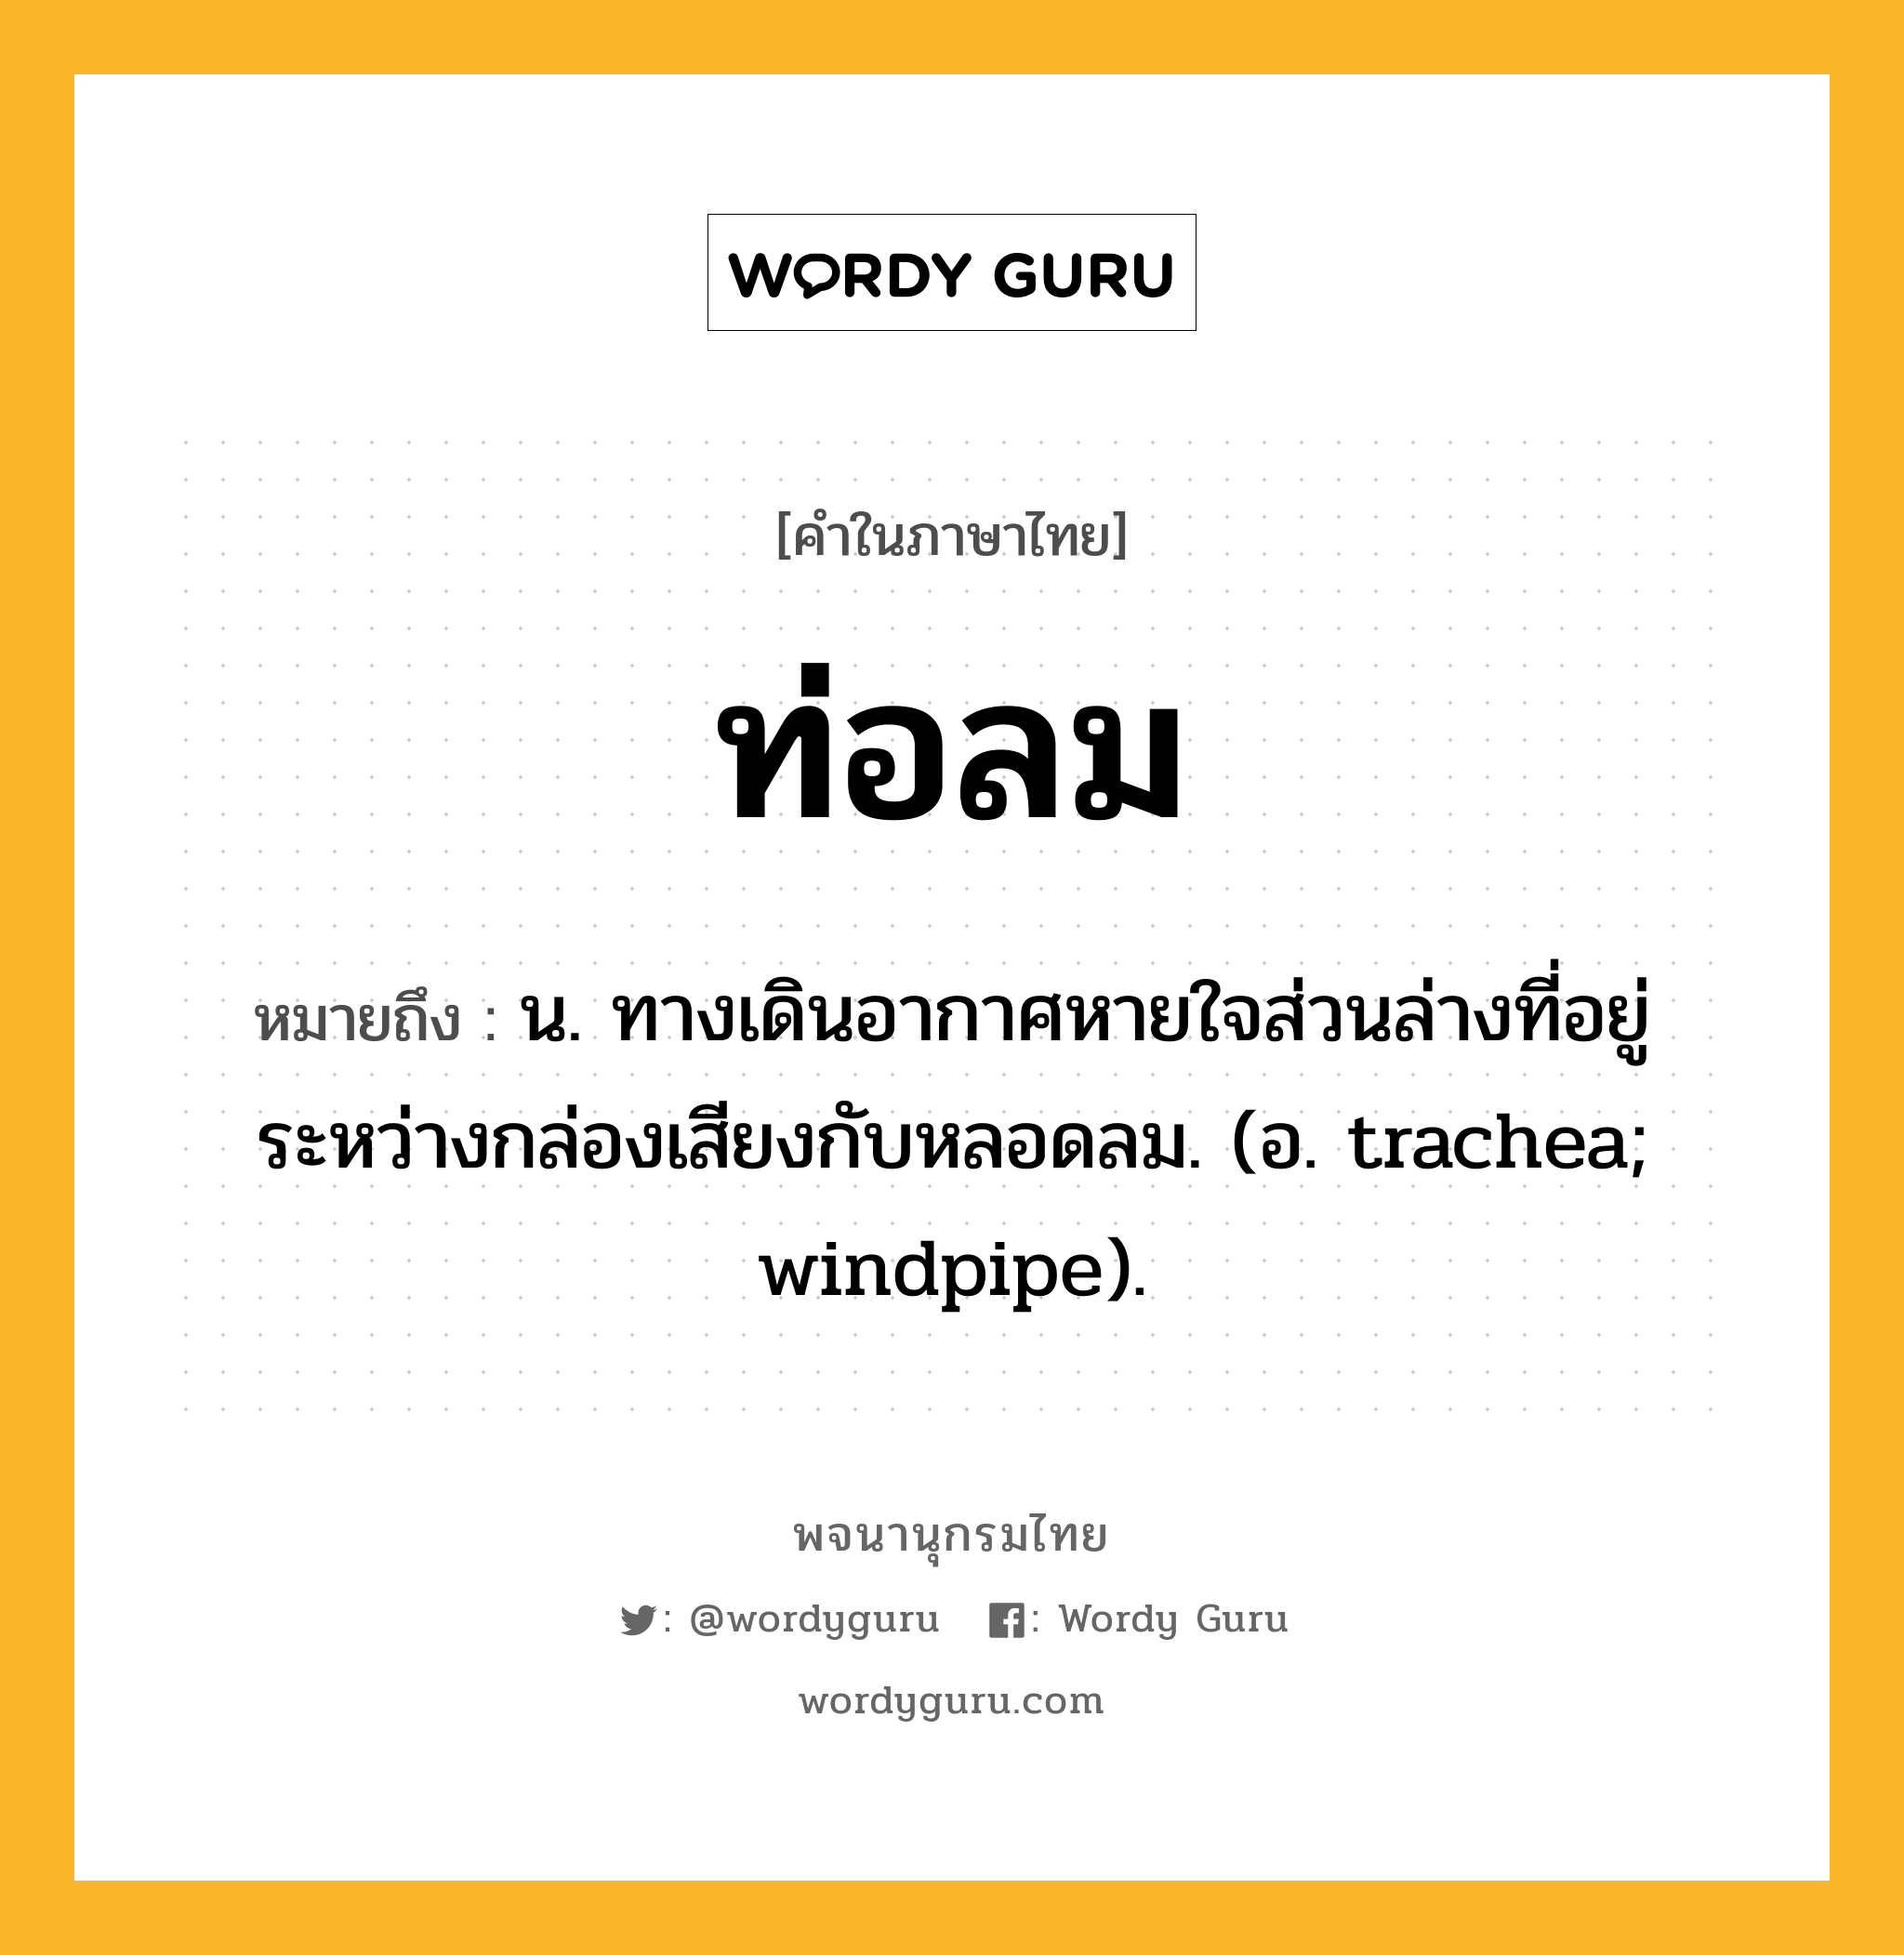 ท่อลม ความหมาย หมายถึงอะไร?, คำในภาษาไทย ท่อลม หมายถึง น. ทางเดินอากาศหายใจส่วนล่างที่อยู่ระหว่างกล่องเสียงกับหลอดลม. (อ. trachea; windpipe).